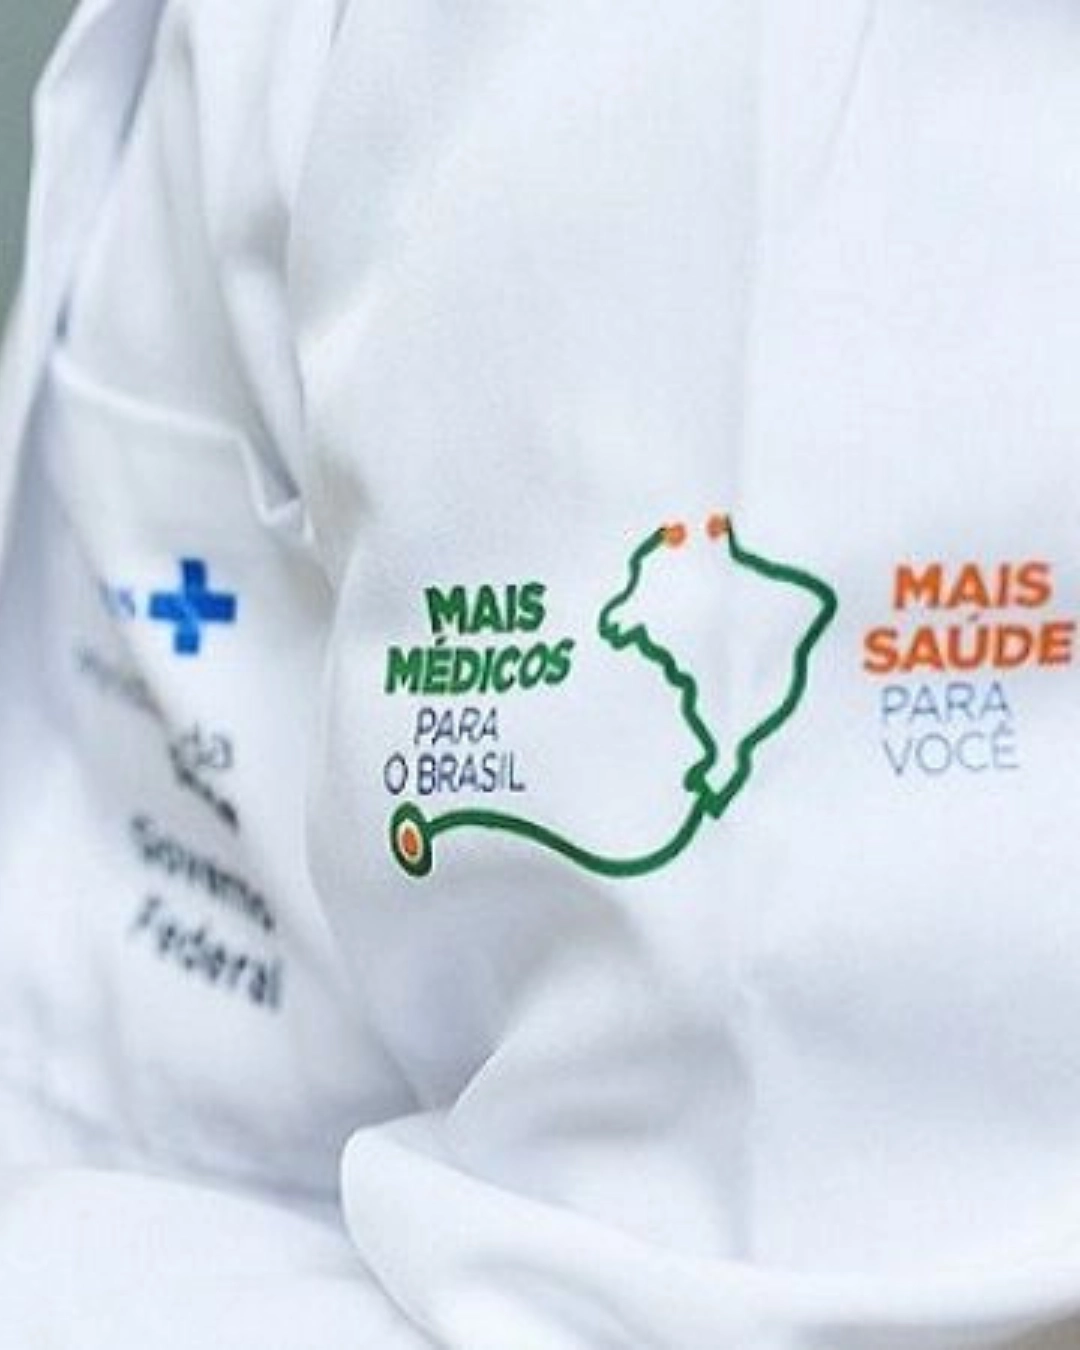 Imagem de destaque - Mais Médicos abre 233 novas vagas no Paraná, incluindo Campina Grande do Sul